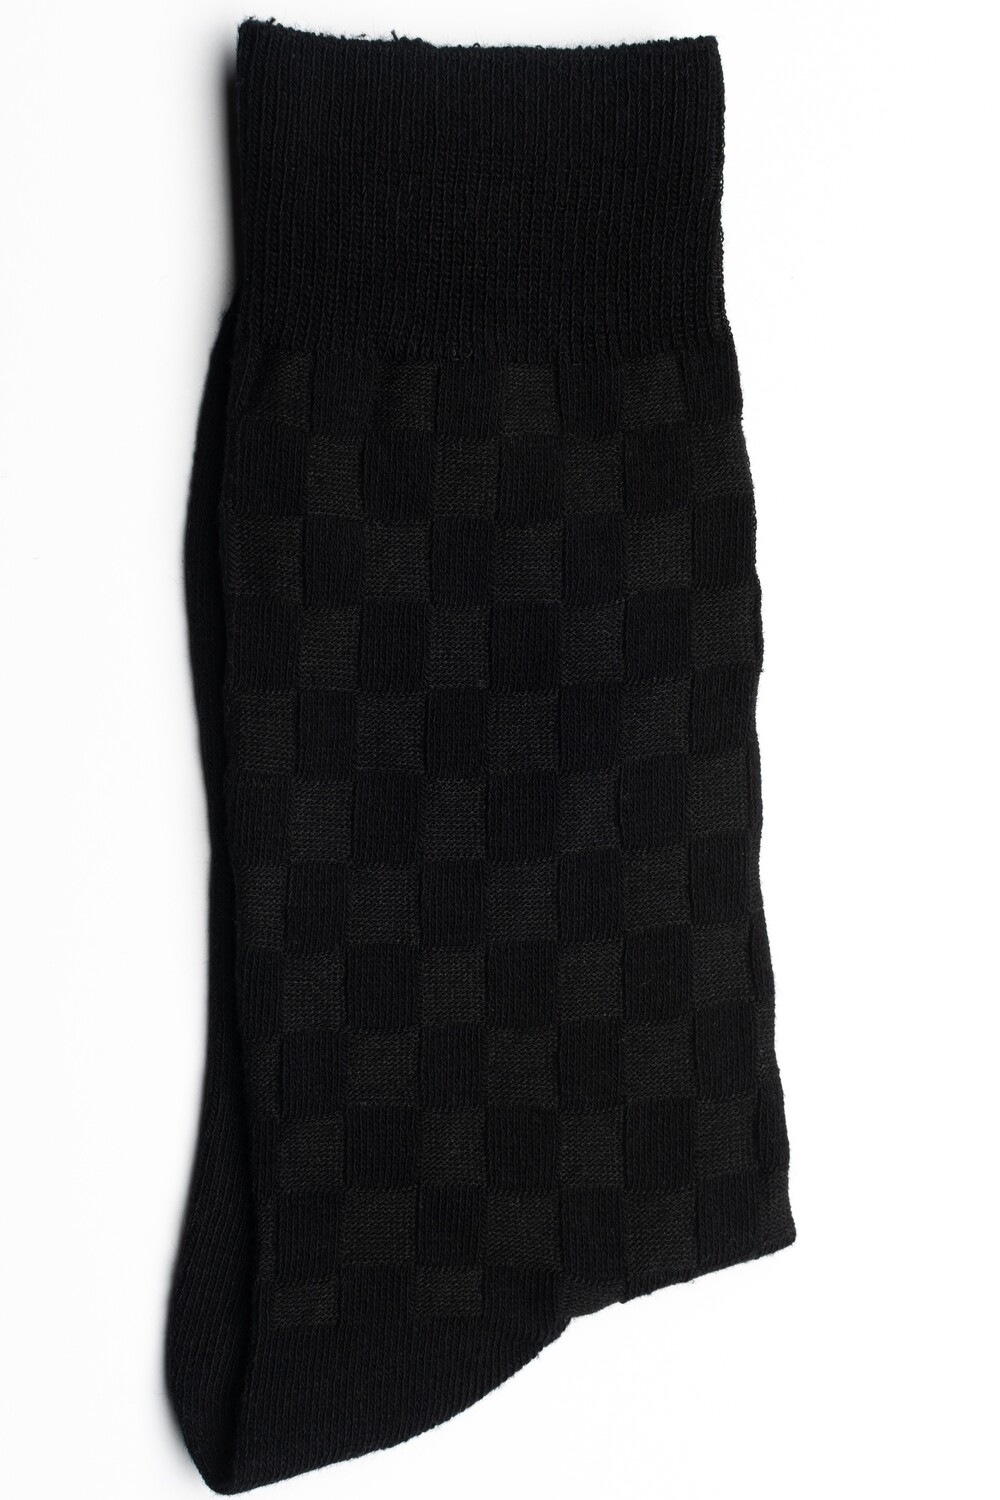 Men&#39;s black checkered dress socks size 9-12